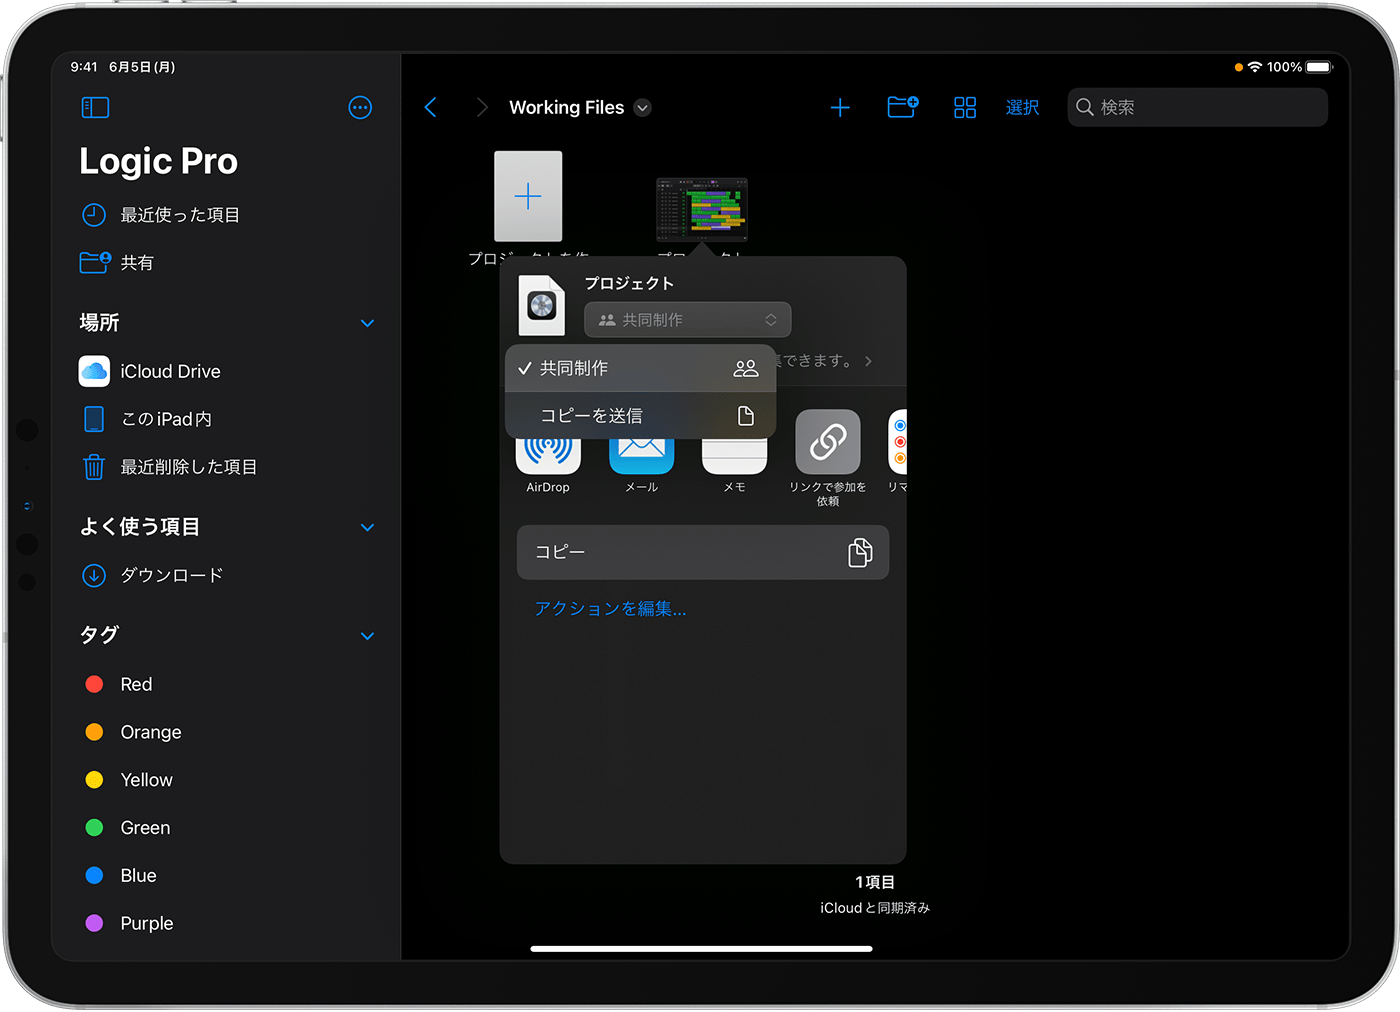 iPad 用 Logic Pro のデフォルトフォルダで「共有」ウインドウが開き、ポップアップメニューから「共同制作」が選択されているところ